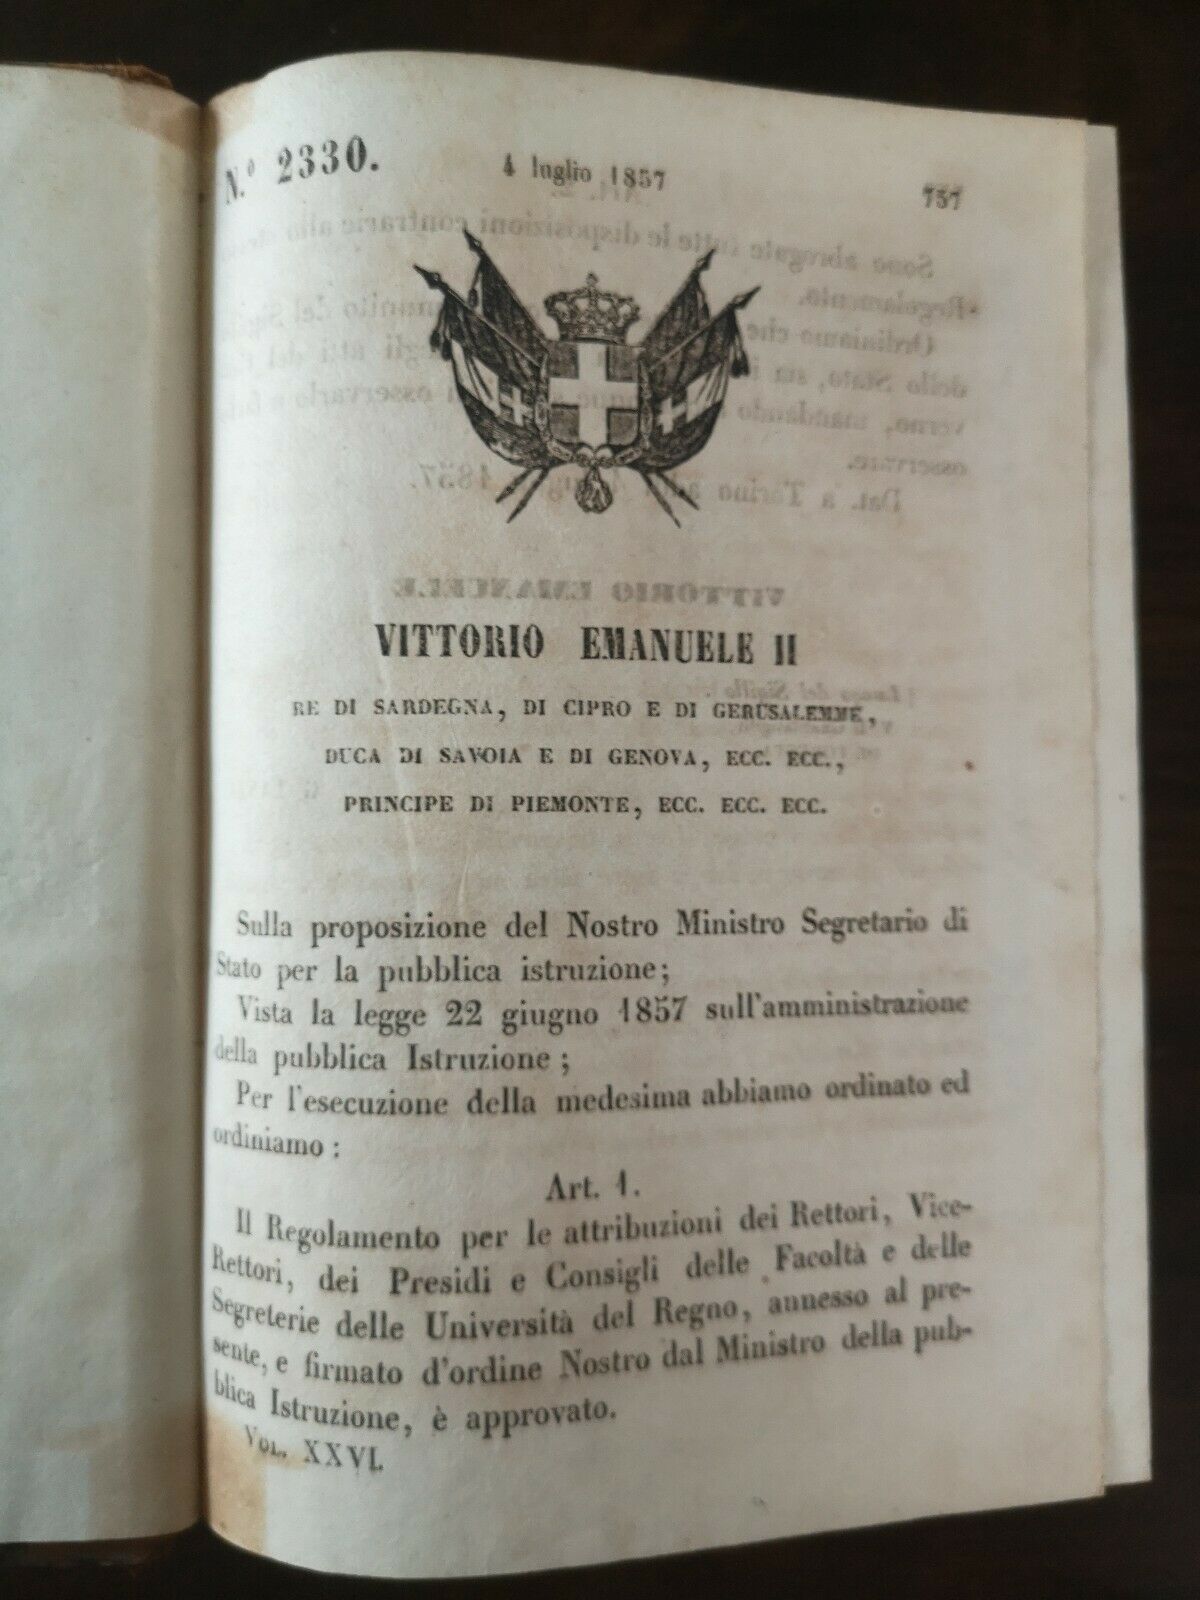 Raccolta Degli Atti Del Governo Il Re Di Sardegna Volume Vigesimosesto Anno 1857 Stamperia reale Torino parte prima e seconda 